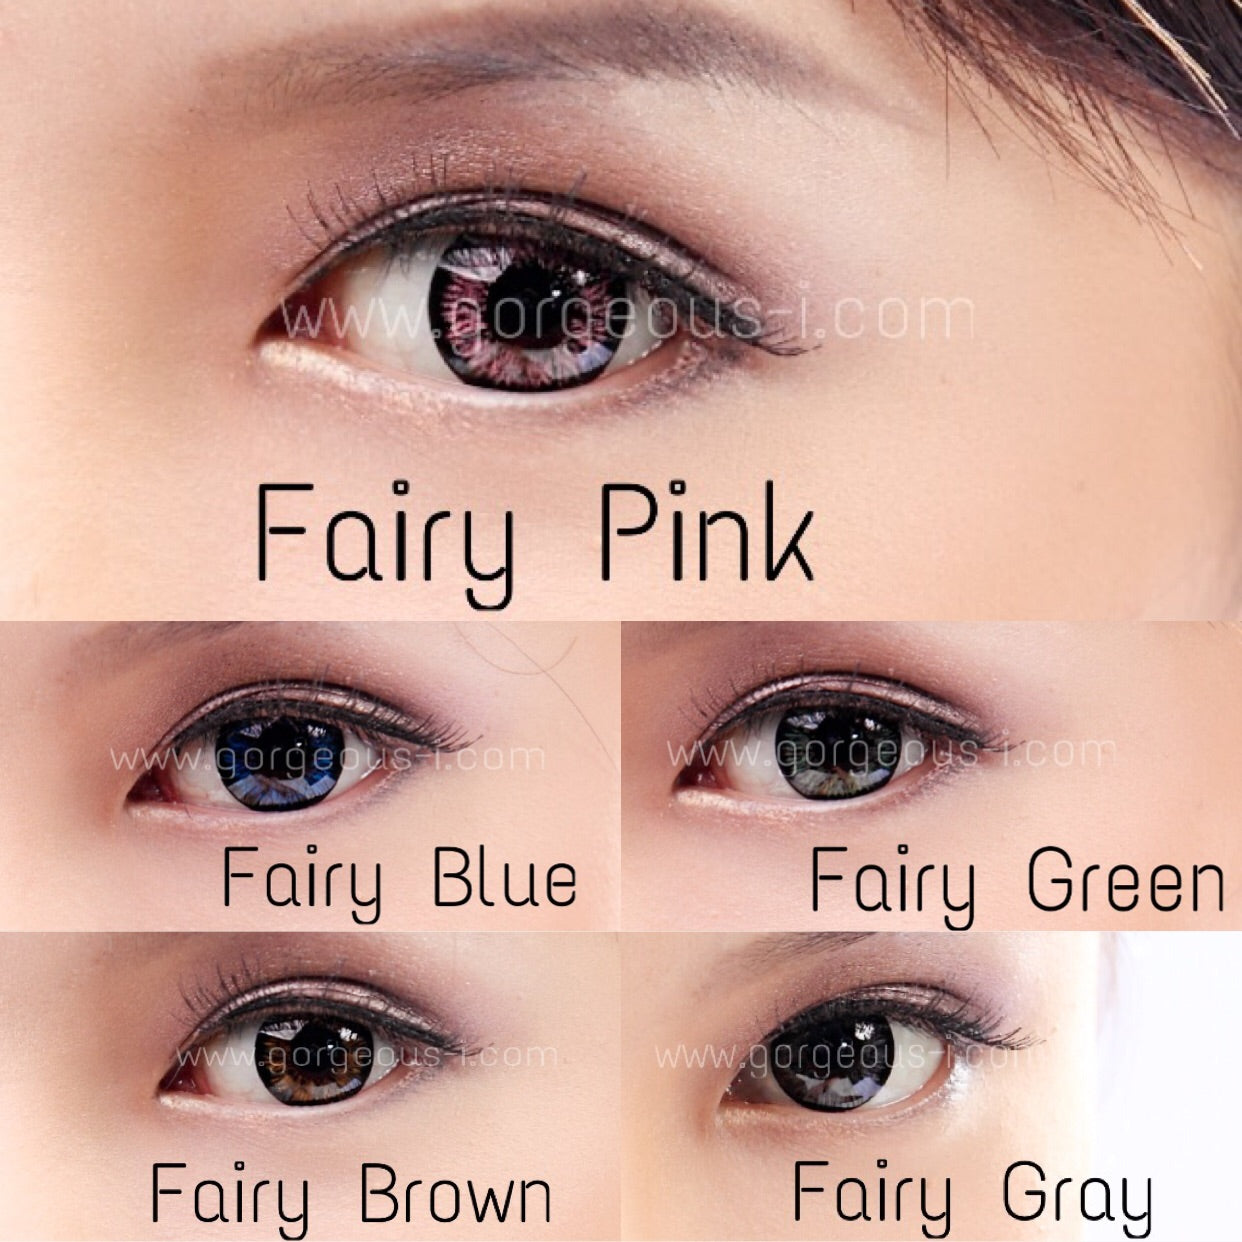 Fairy Gray - Primocon